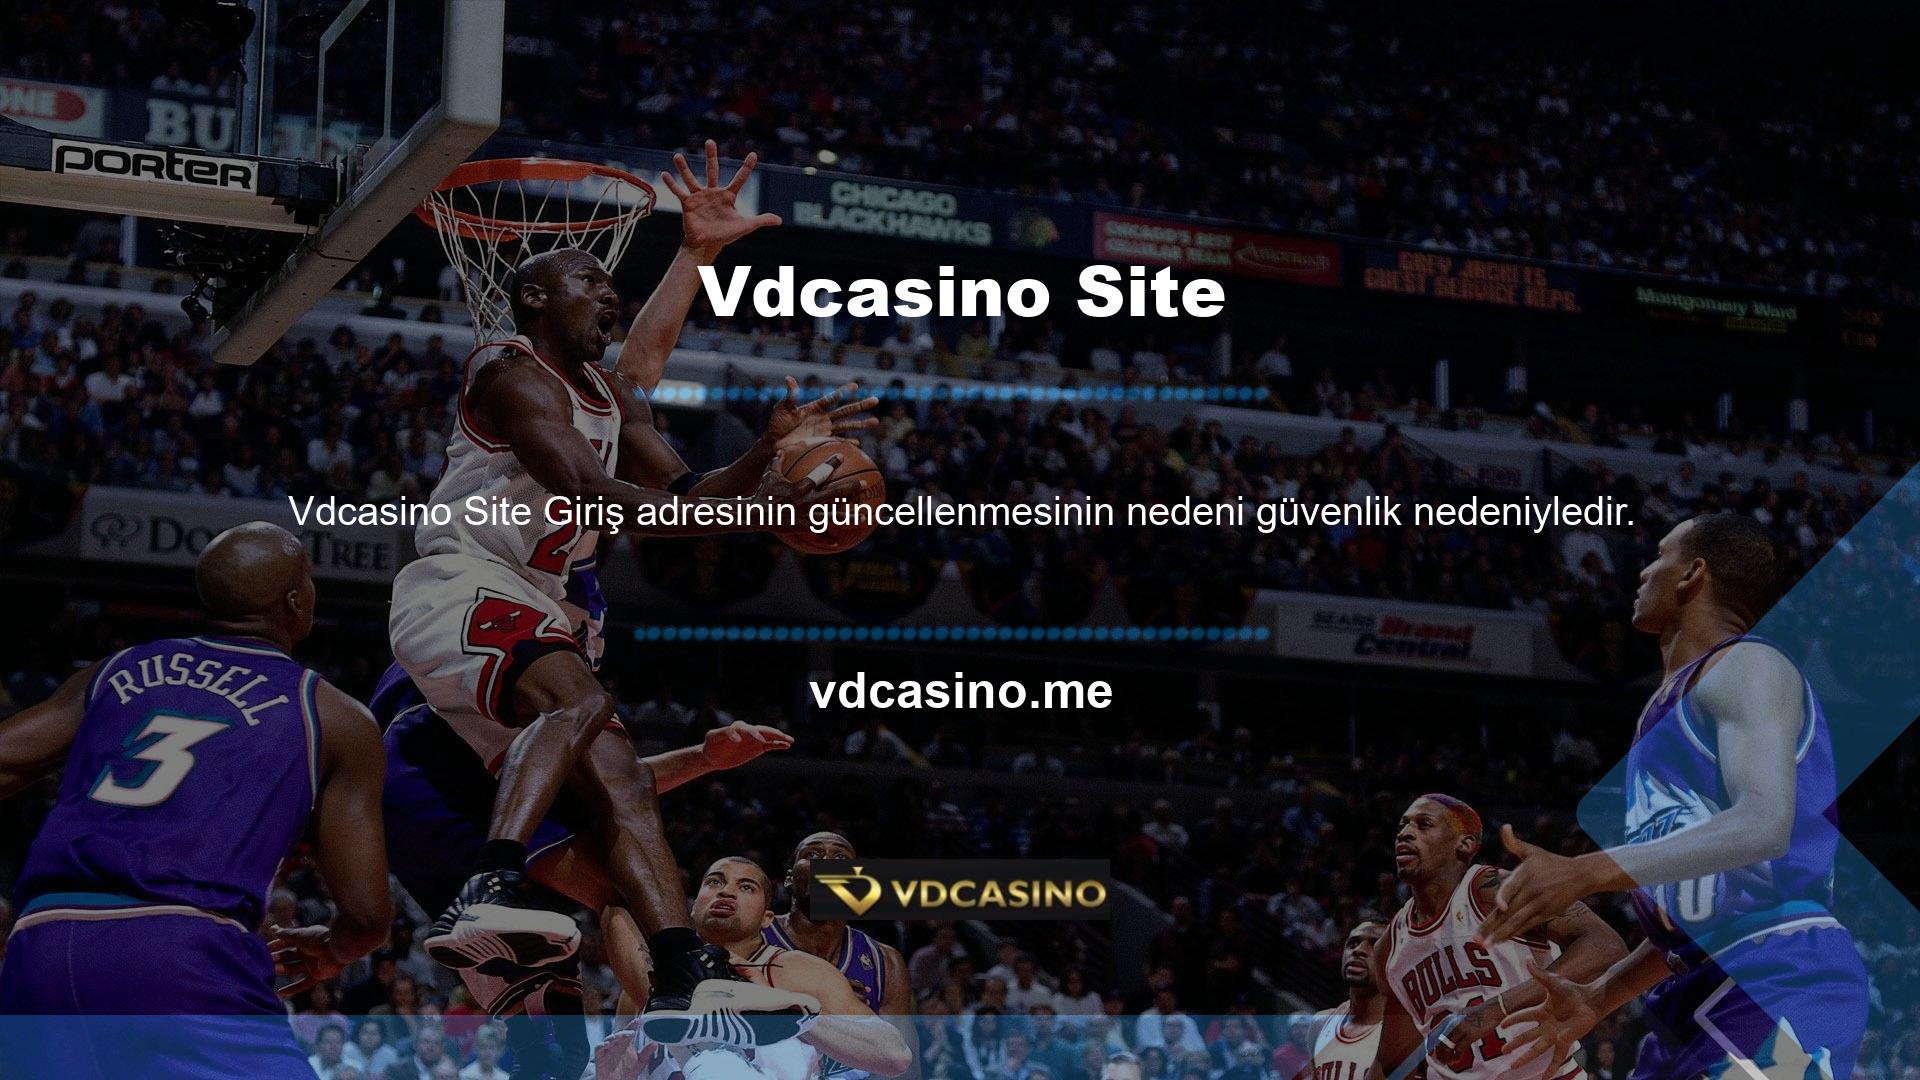 Vdcasino, müşterilerin mevcut web sitelerine sorunsuz bir şekilde erişmeleri ve bilgileri buradan almaları için çeşitli yollar bulmuştur